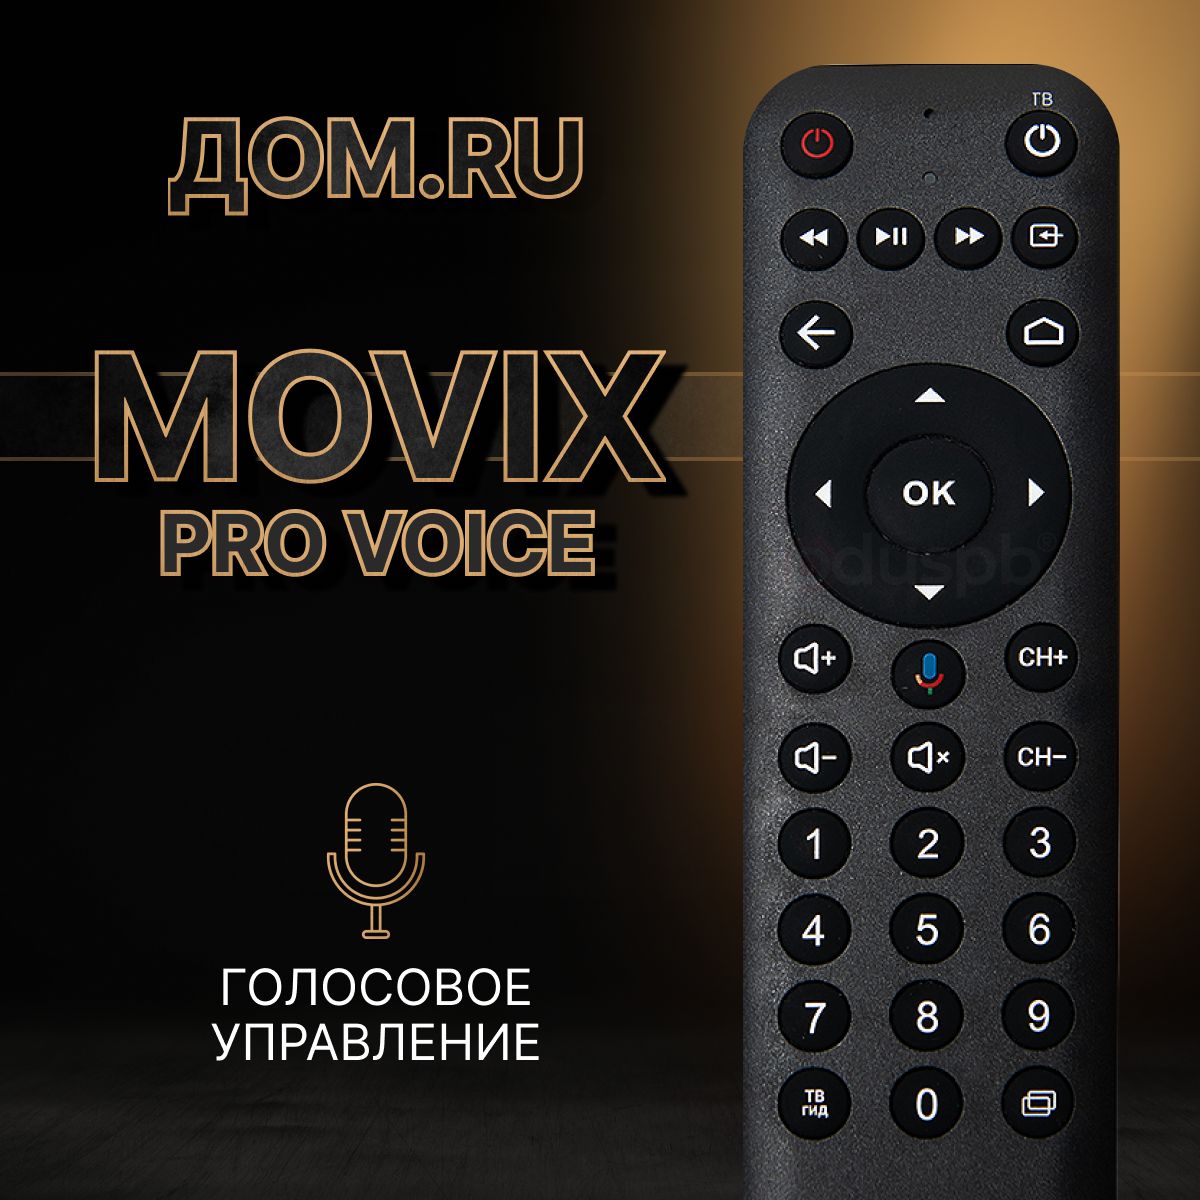 Пульт Movix. Пульт для приставки Мовикс. ТВ-приставка Movix Pro Voice. Мовикс приставка батарейка в пульте. Пульт movix батарейки